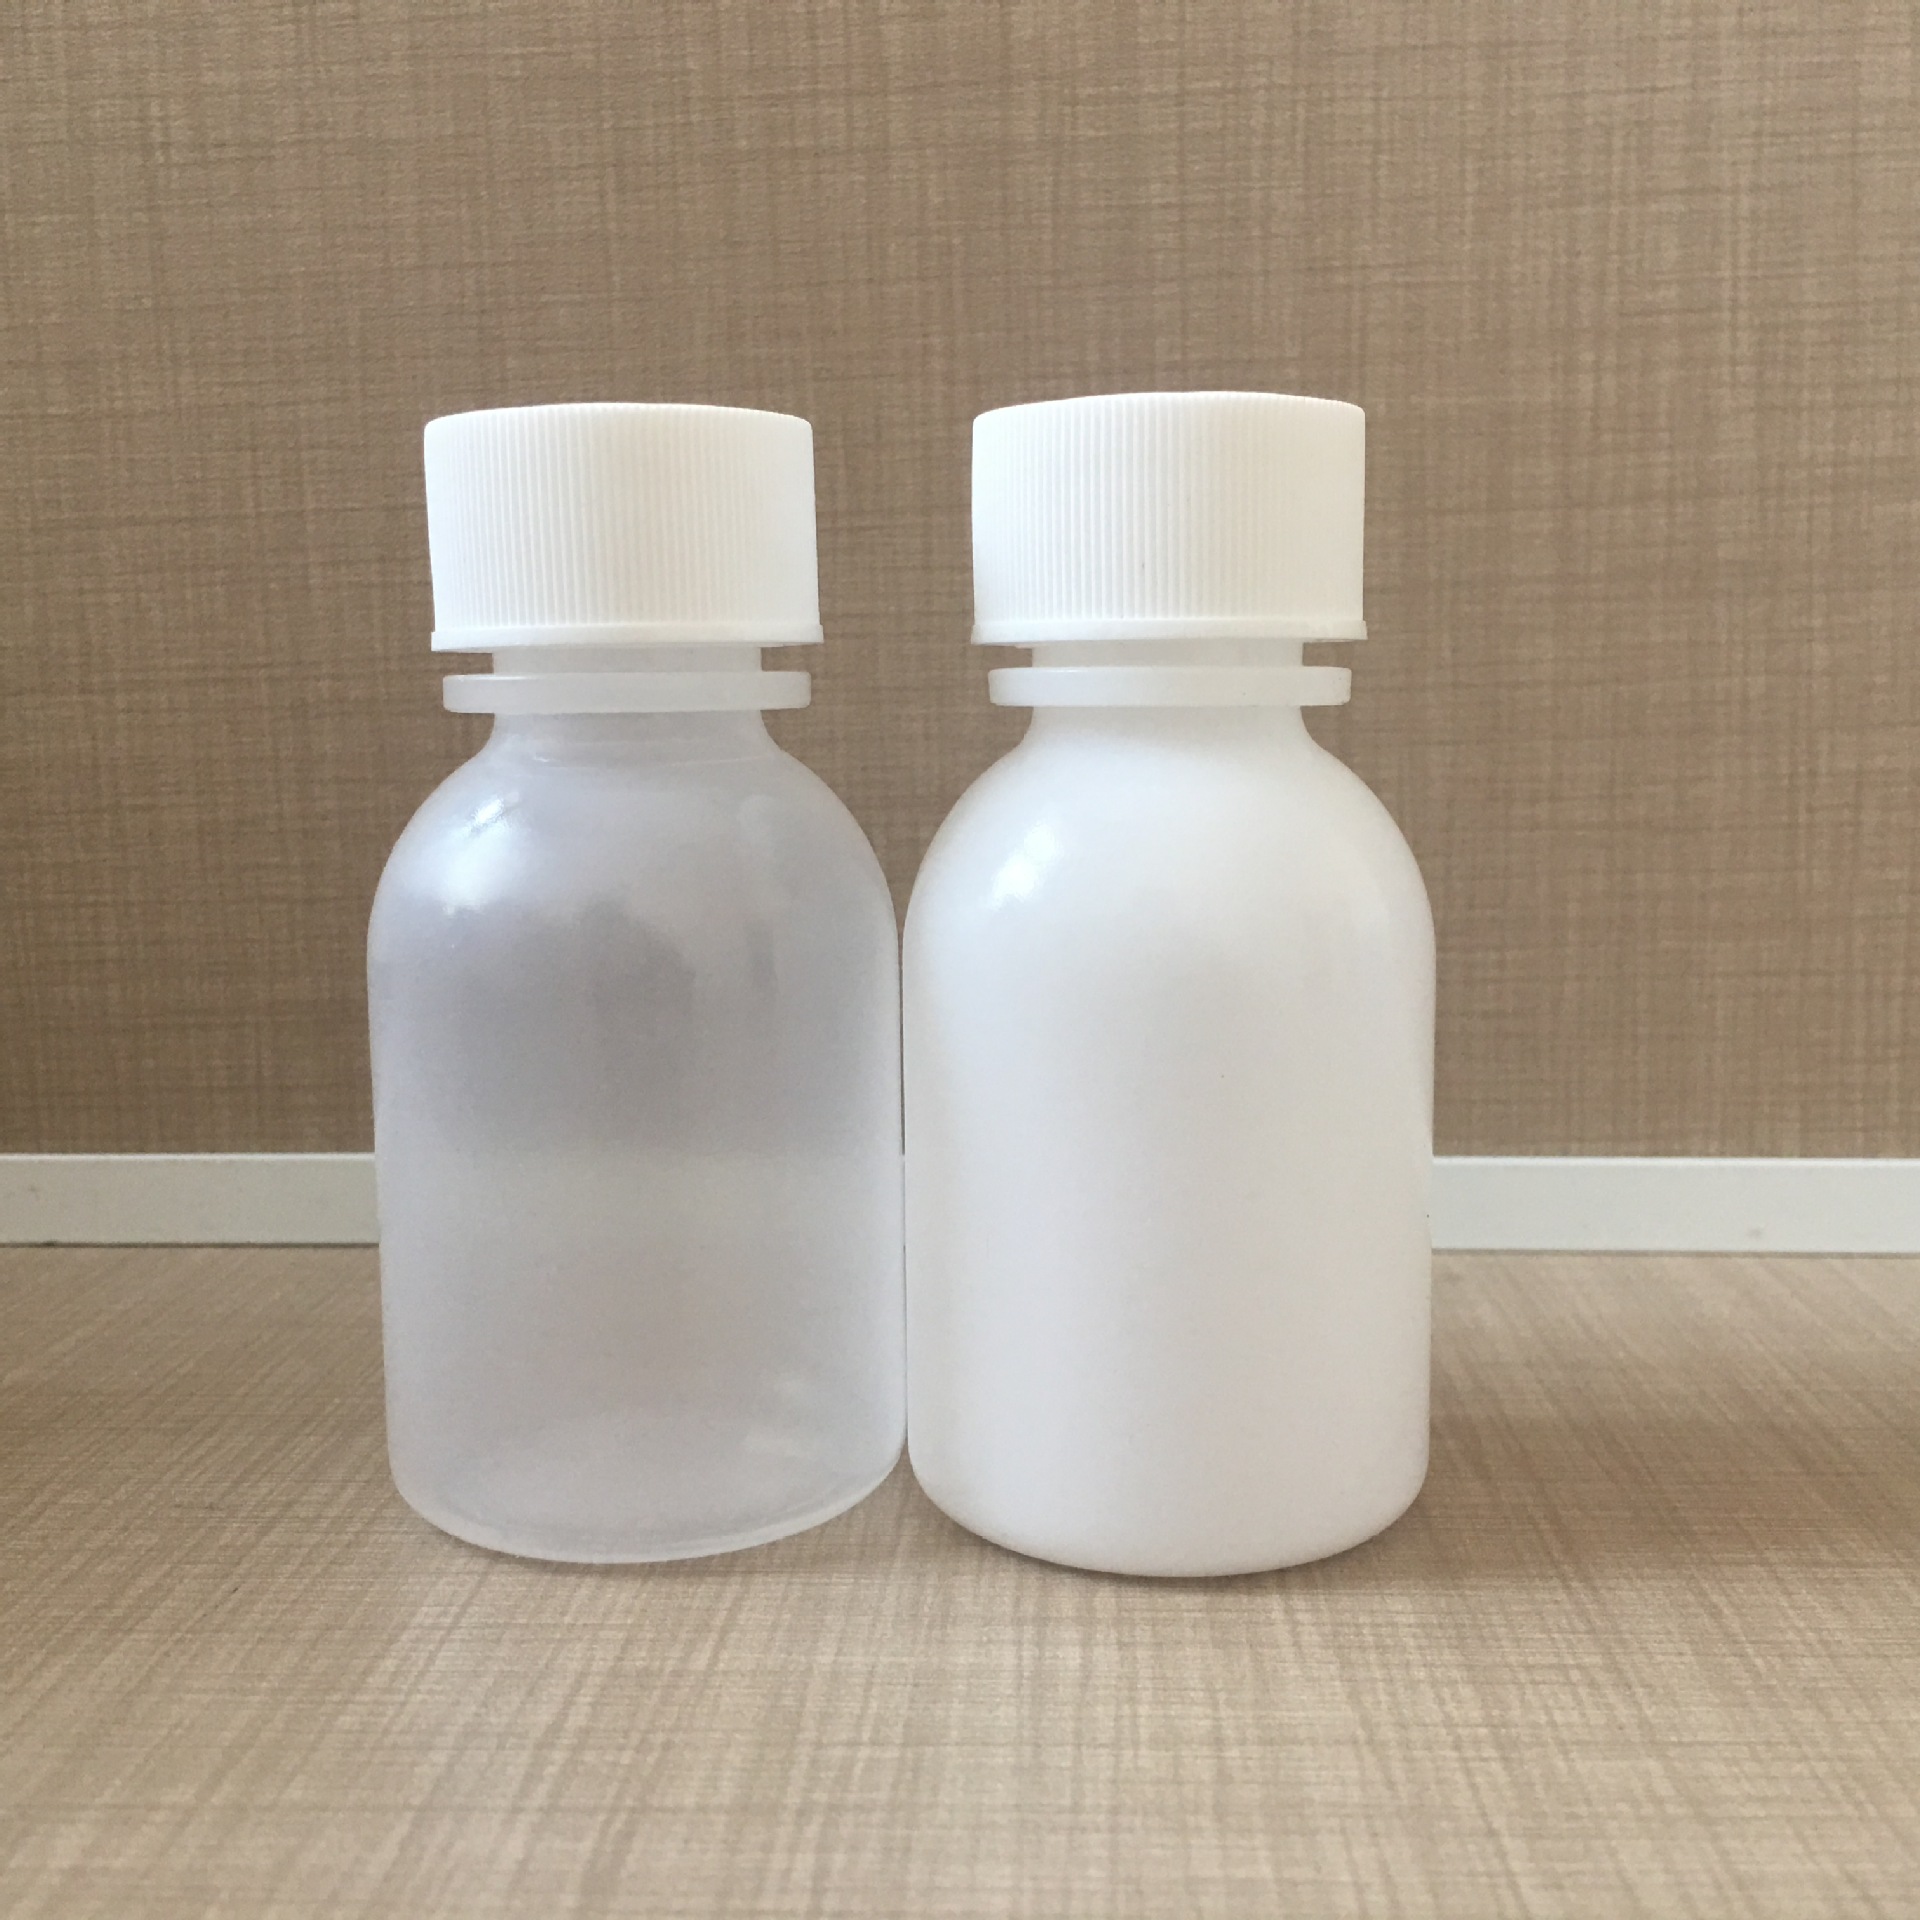 口服液体药用塑料瓶液体塑料瓶外用塑料瓶60ml塑料瓶PE注吹塑料瓶示例图5